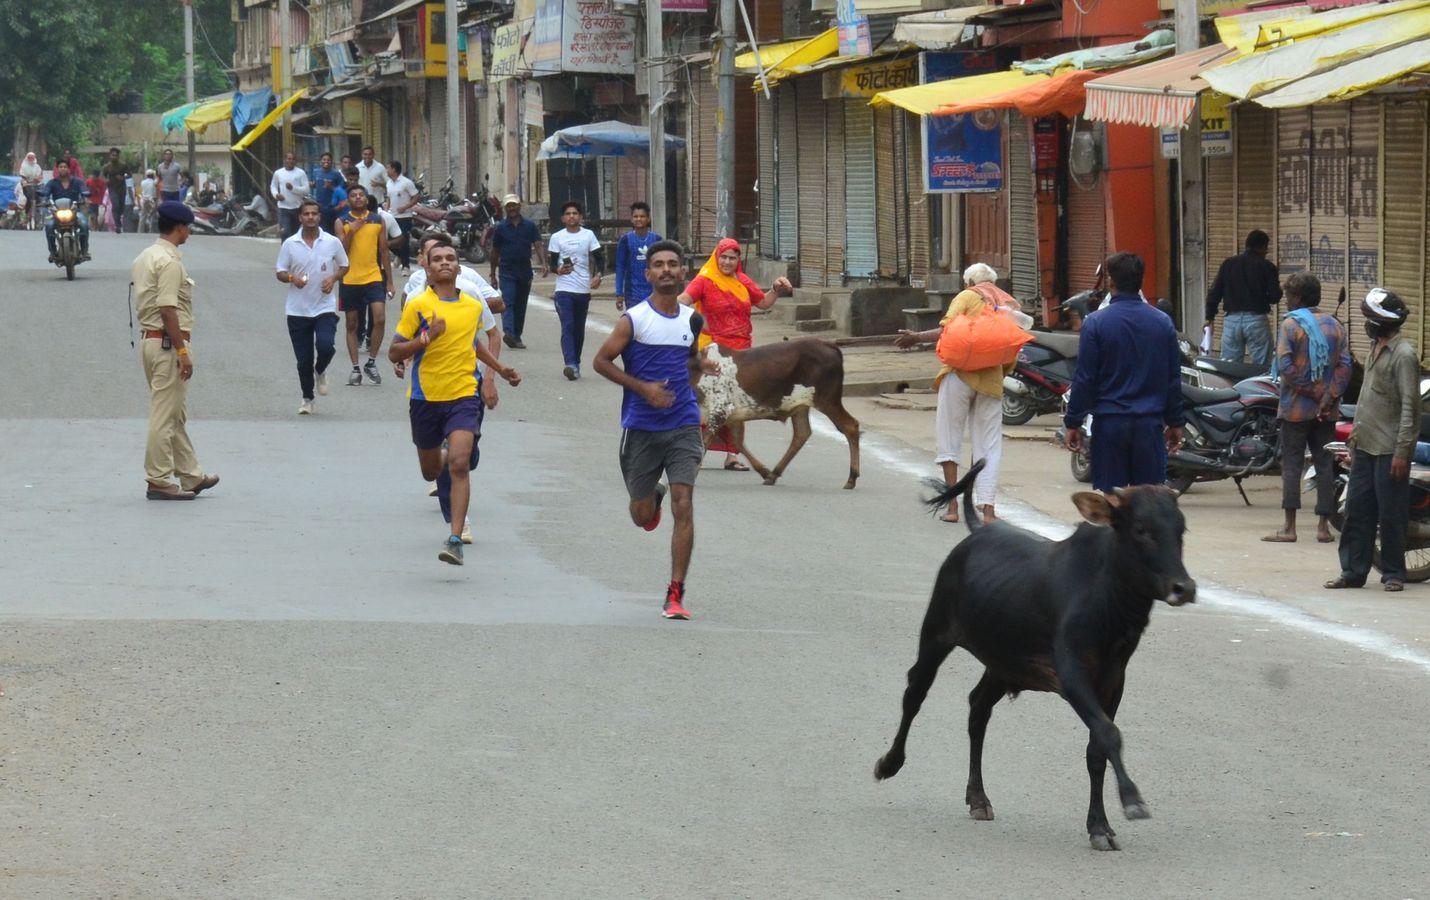 सद्भावना दौड़ में अव्यवस्था का आलम ये था कि प्रतिभागियों के साथ मवेशी भी दौड़े।